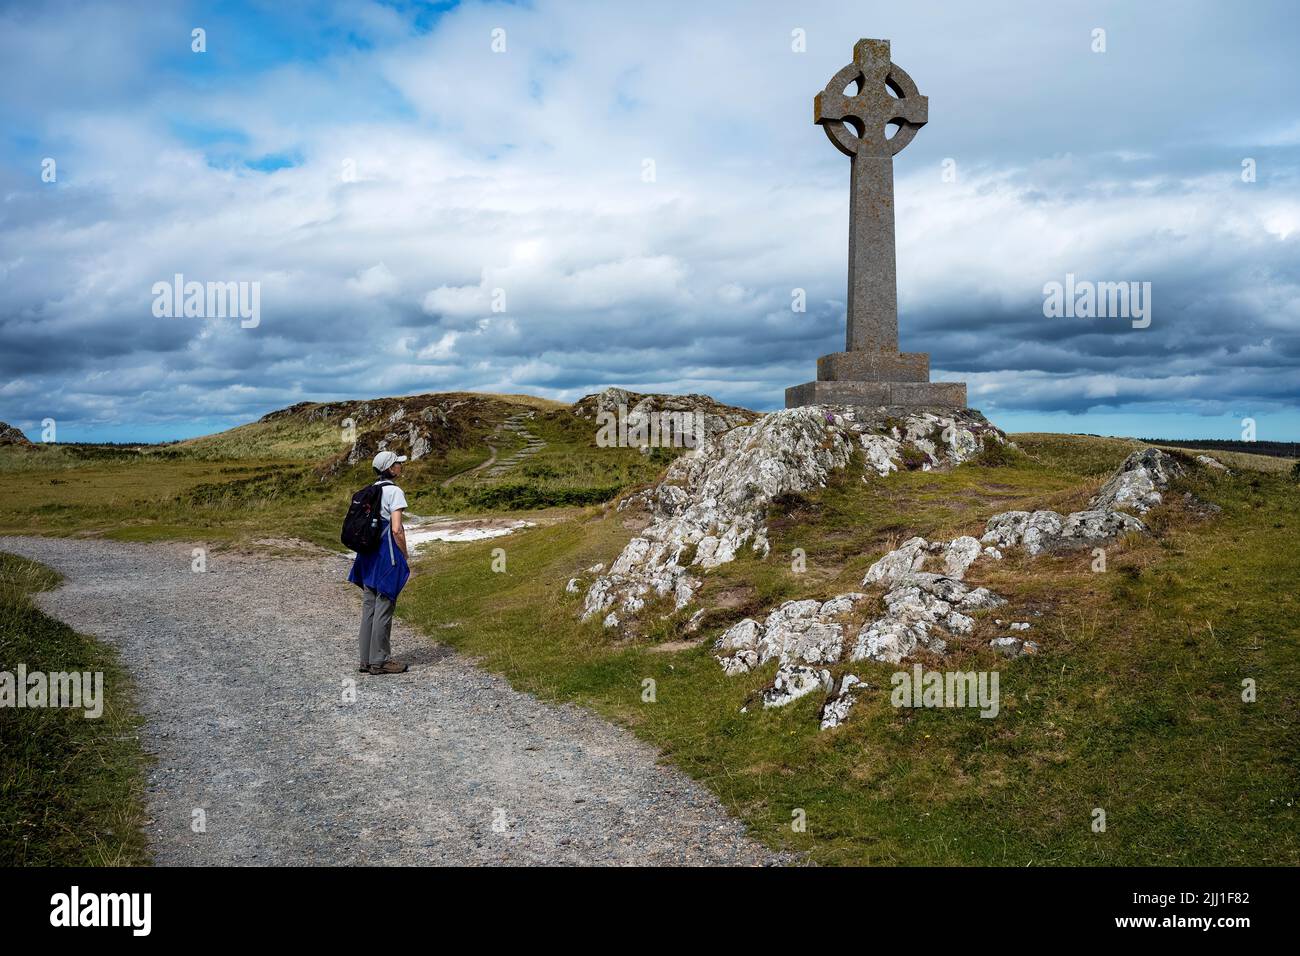 El siglo 20th de piedra alta Cruz Celta celebrar la vida de San Dwynwen (siglo 5th) patrón de los amantes, Llanddwyn Island, Anglesey, Gales Foto de stock